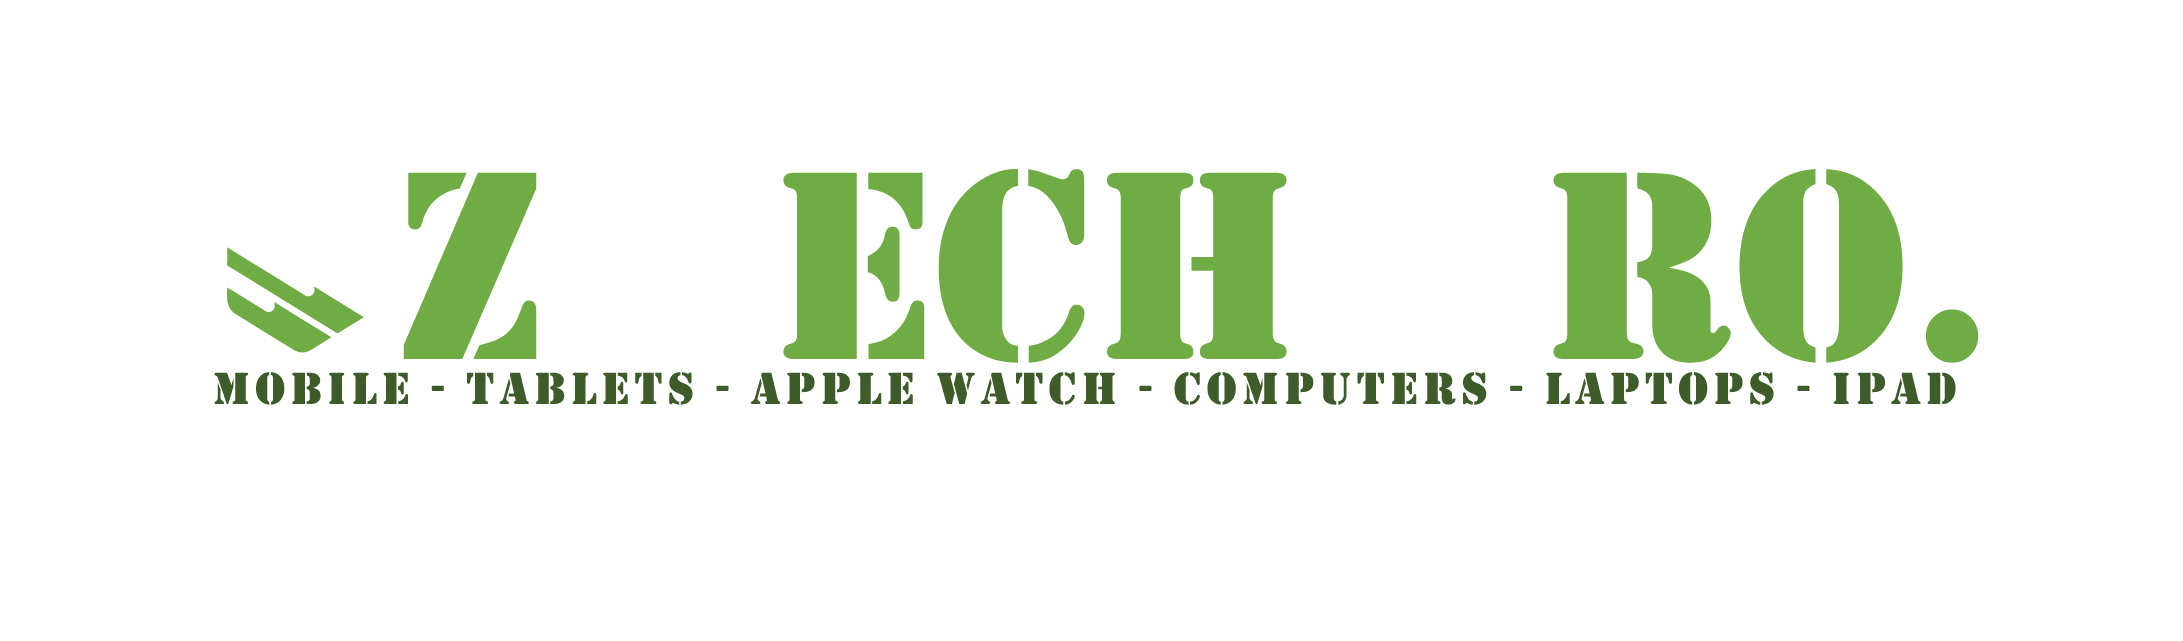 logo oz tech pro final green white no bg 01